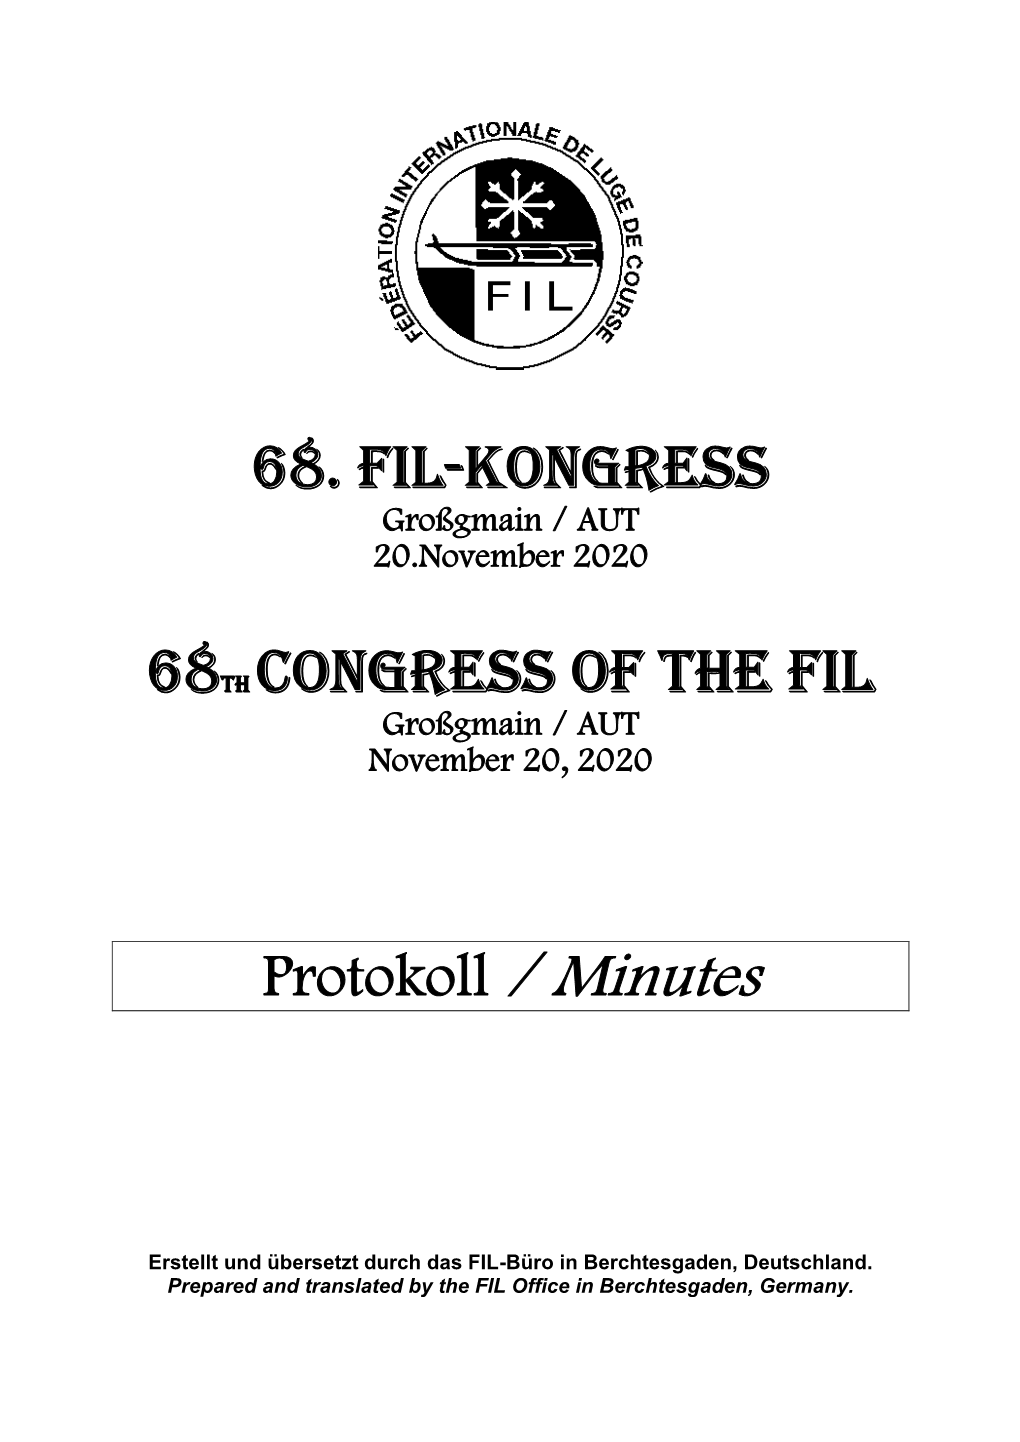 68. FIL-Kongress 68Th Congress of the FIL Protokoll / Minutes